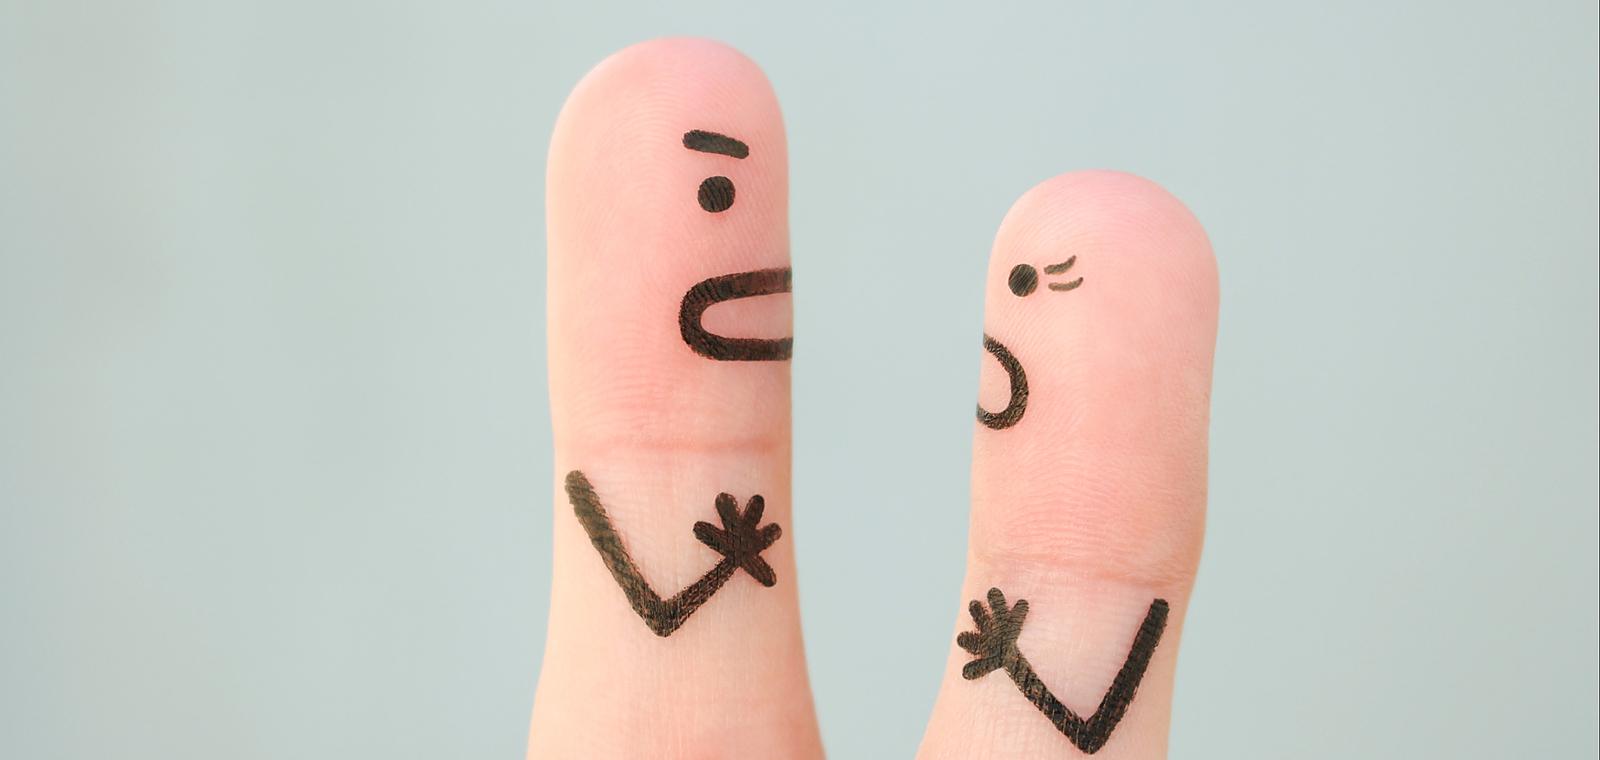 Emotions au travail : Doit-on vraiment tout partager ?